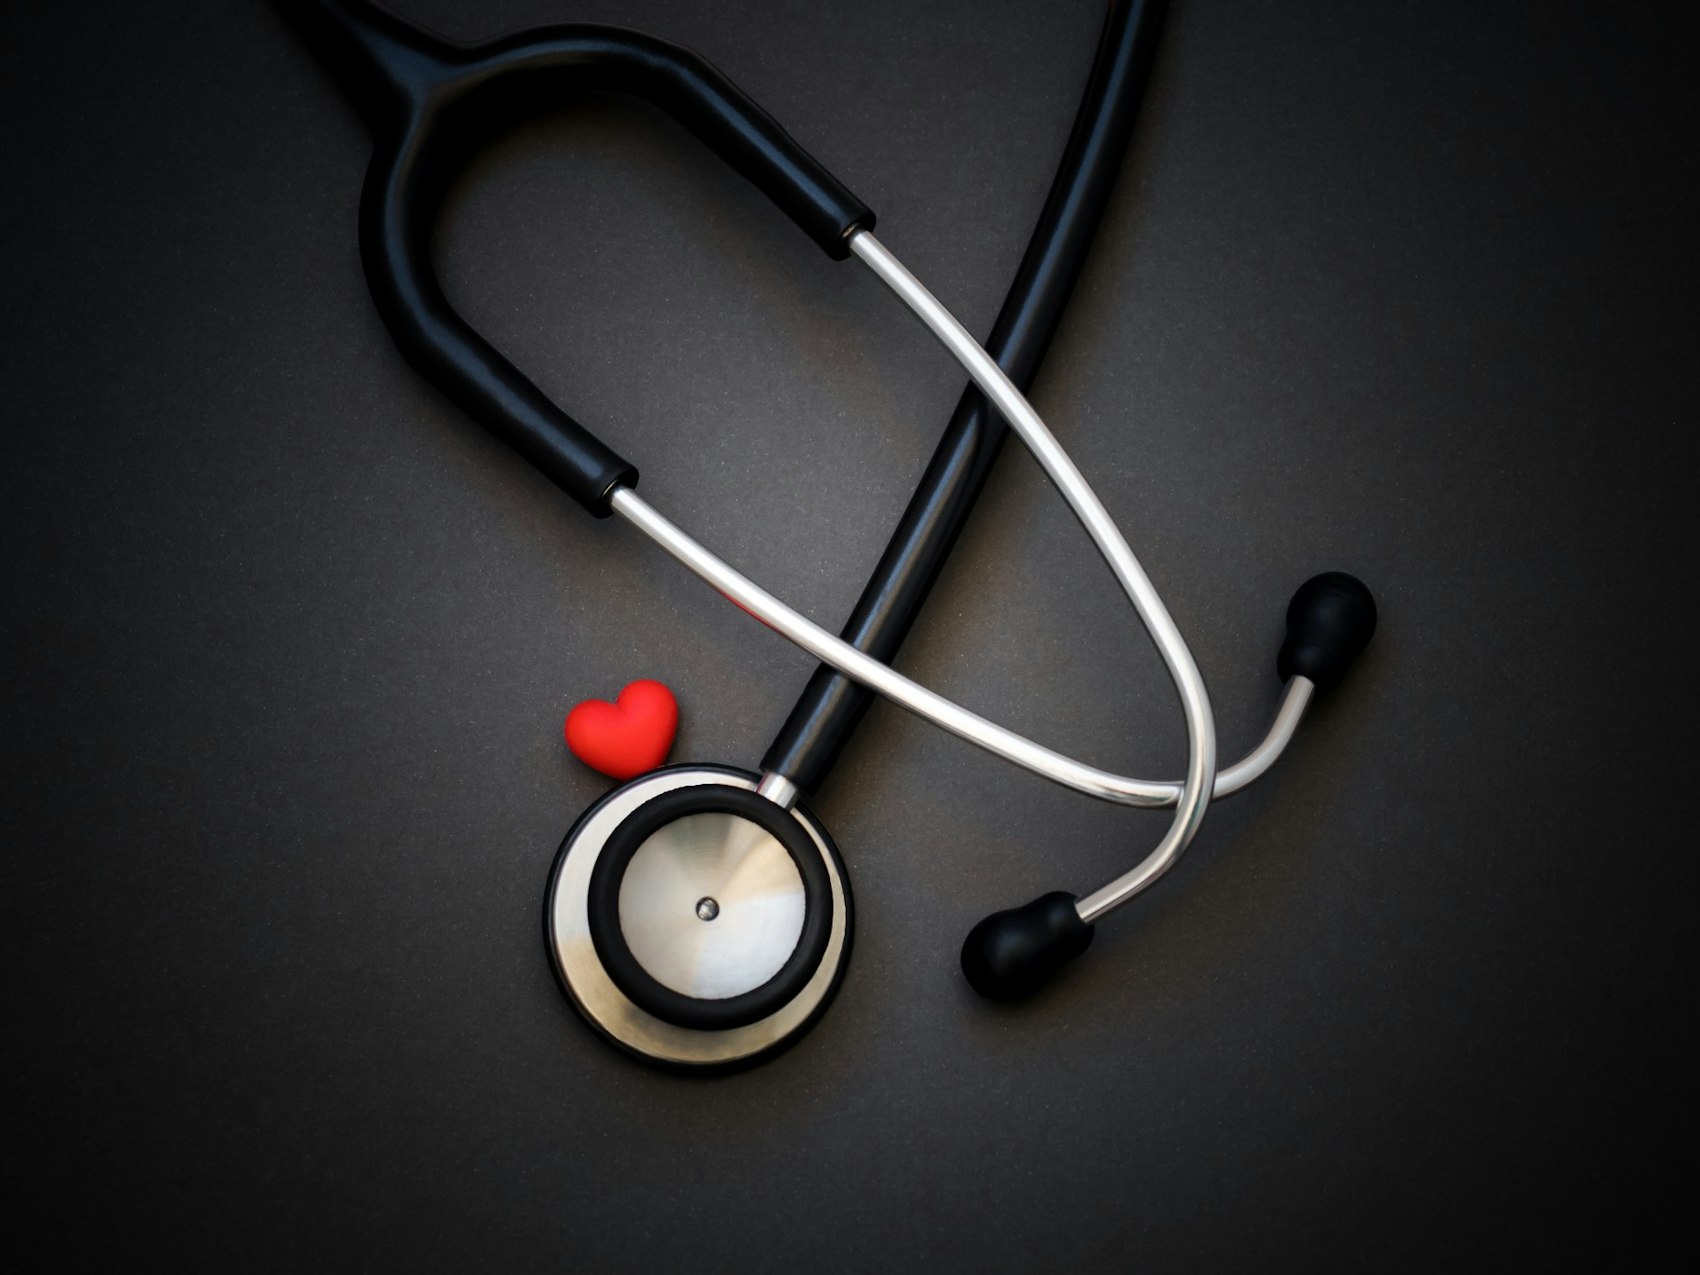 Ein Stethoskop und ein rotes Herz liegen auf einem Tisch.